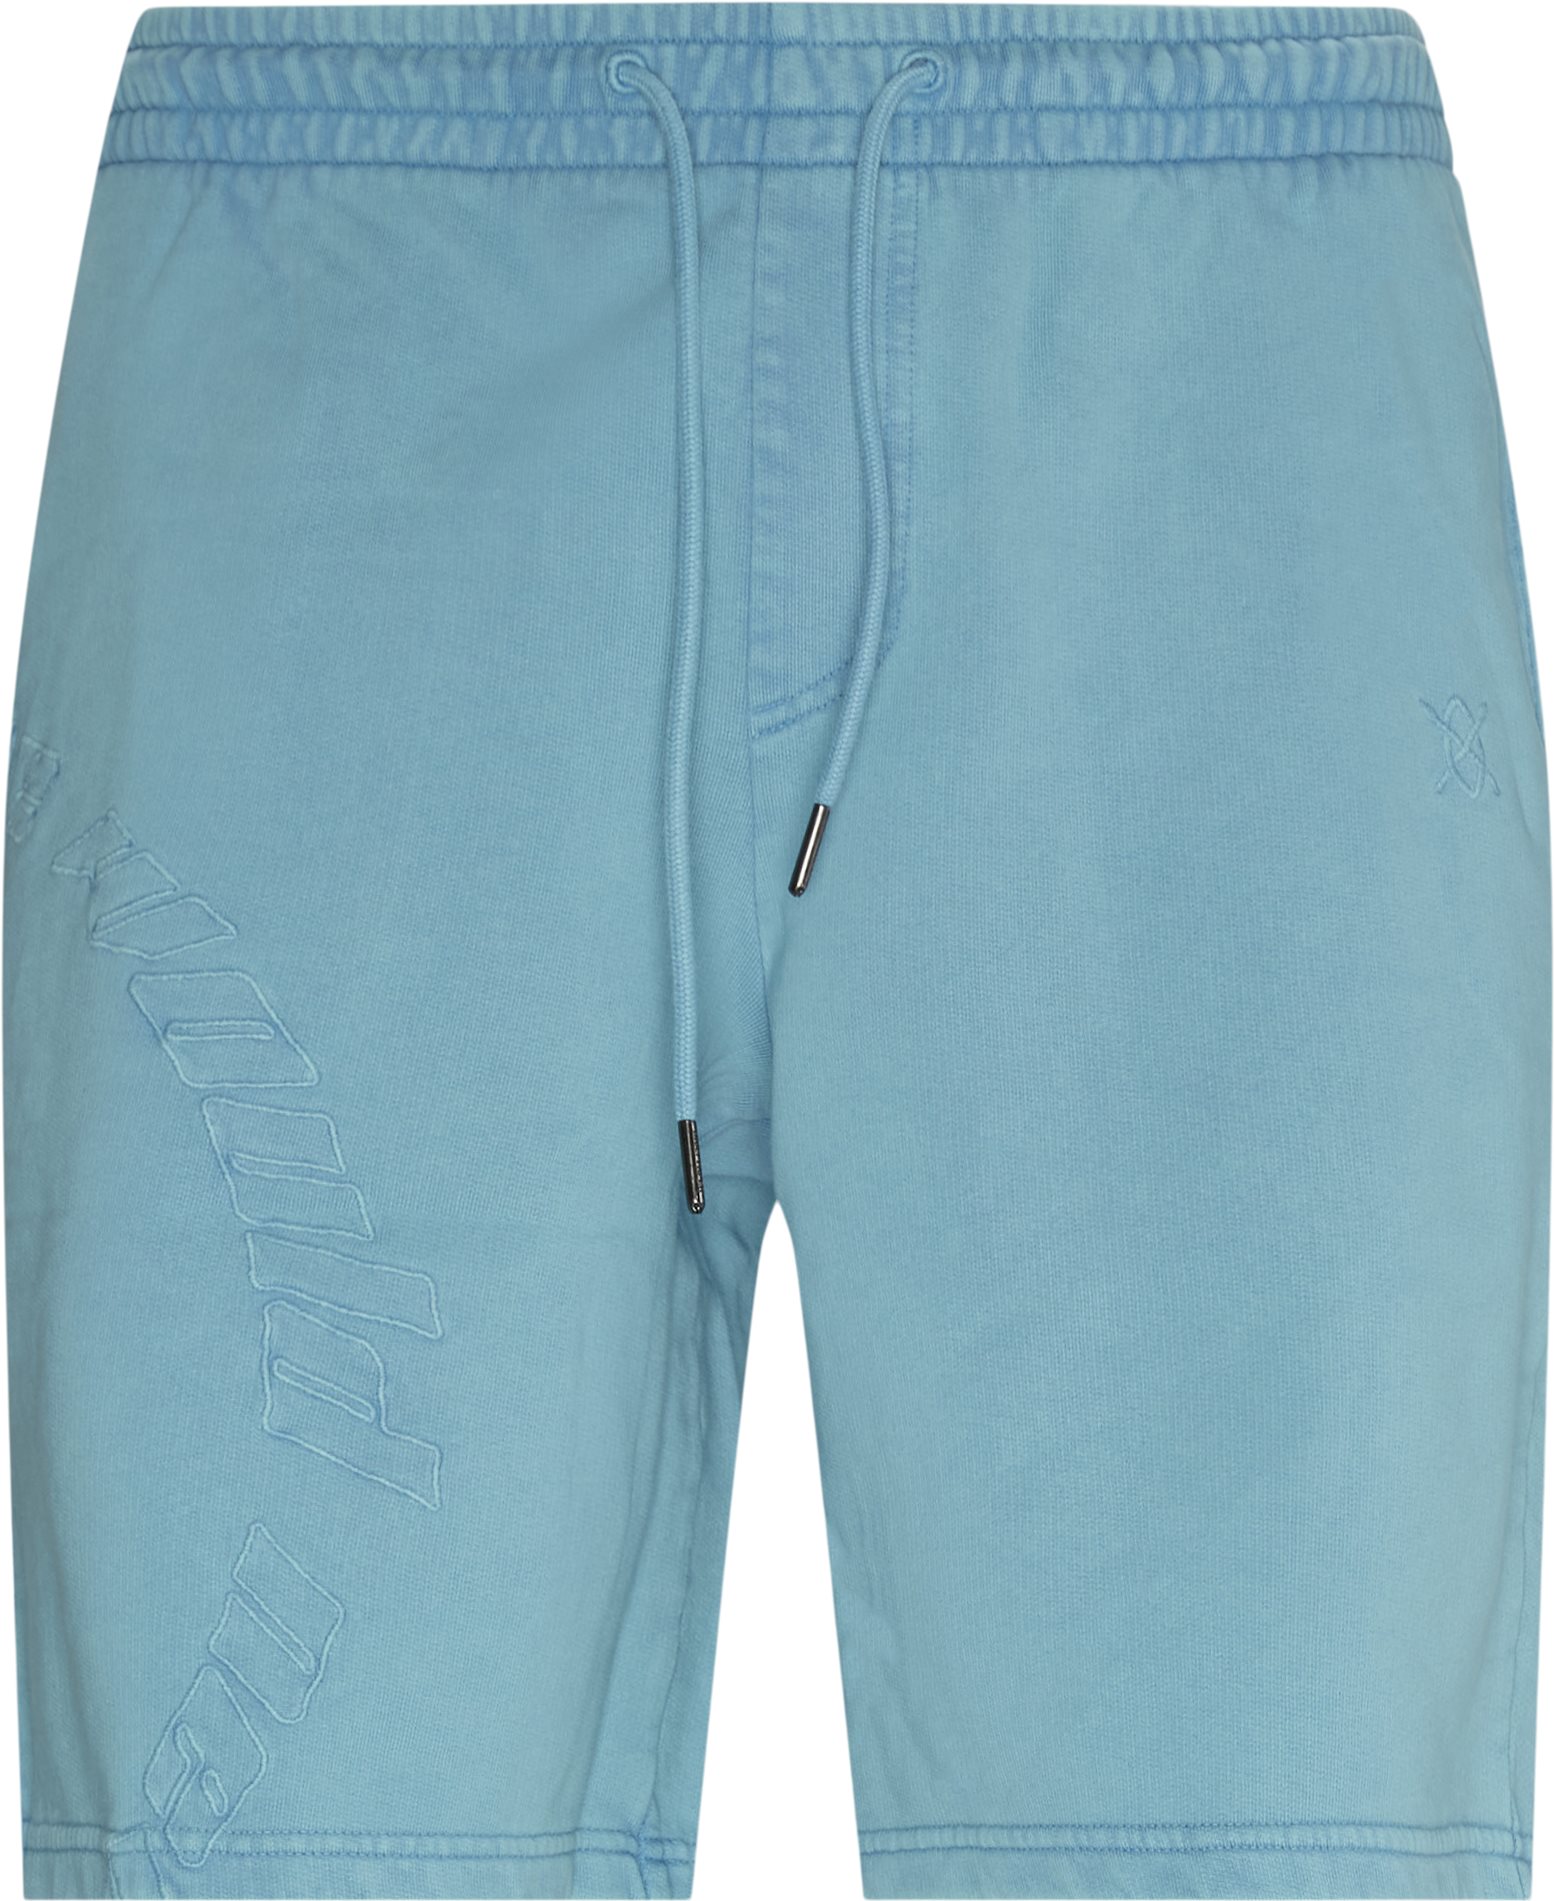 Kacid Sweatshorts - Shorts - Regular fit - Blå